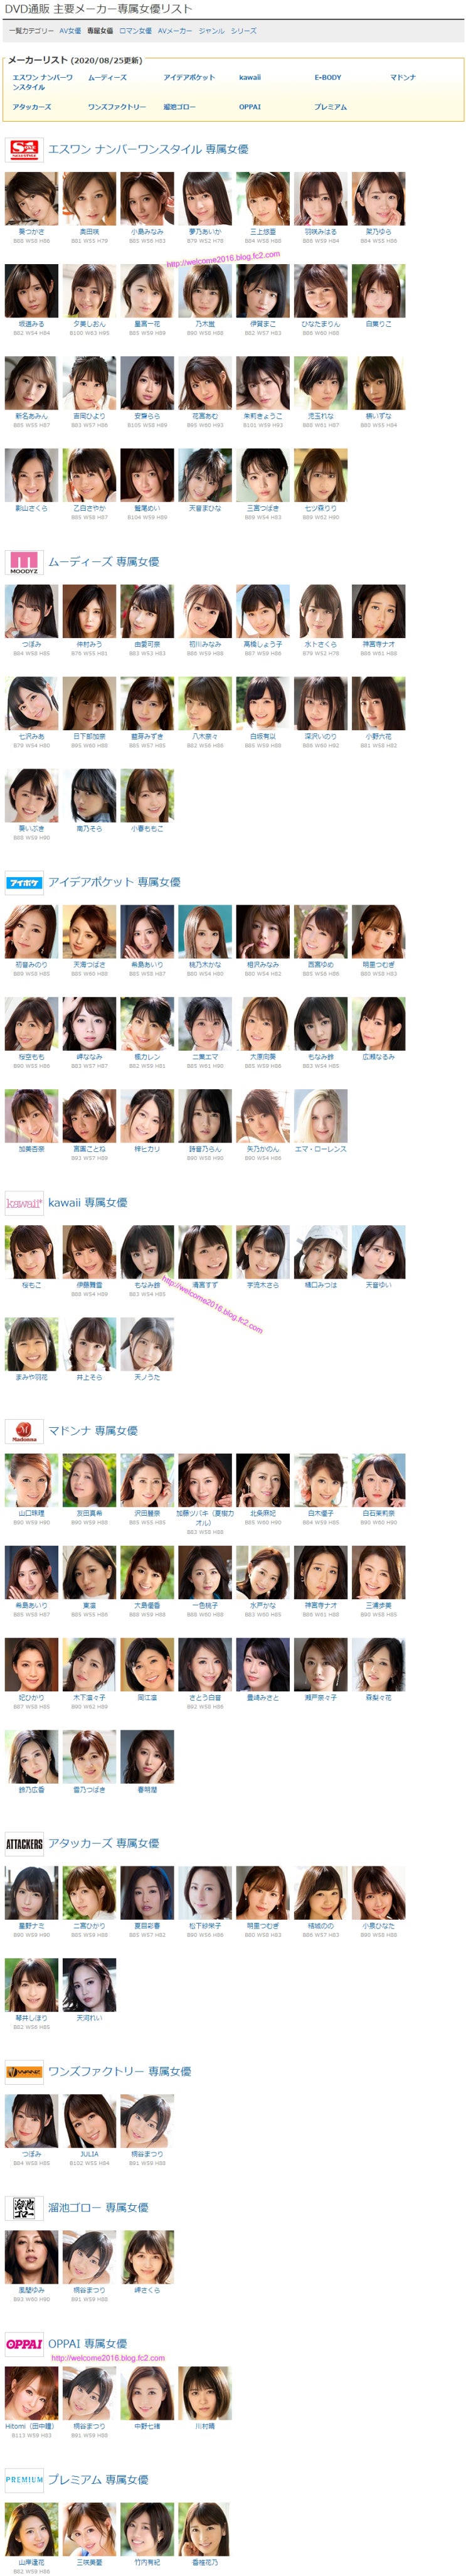 (2020/08/25更新) 主要メーカー専属女優リス(주요 메이커 전속 여배우 목록)